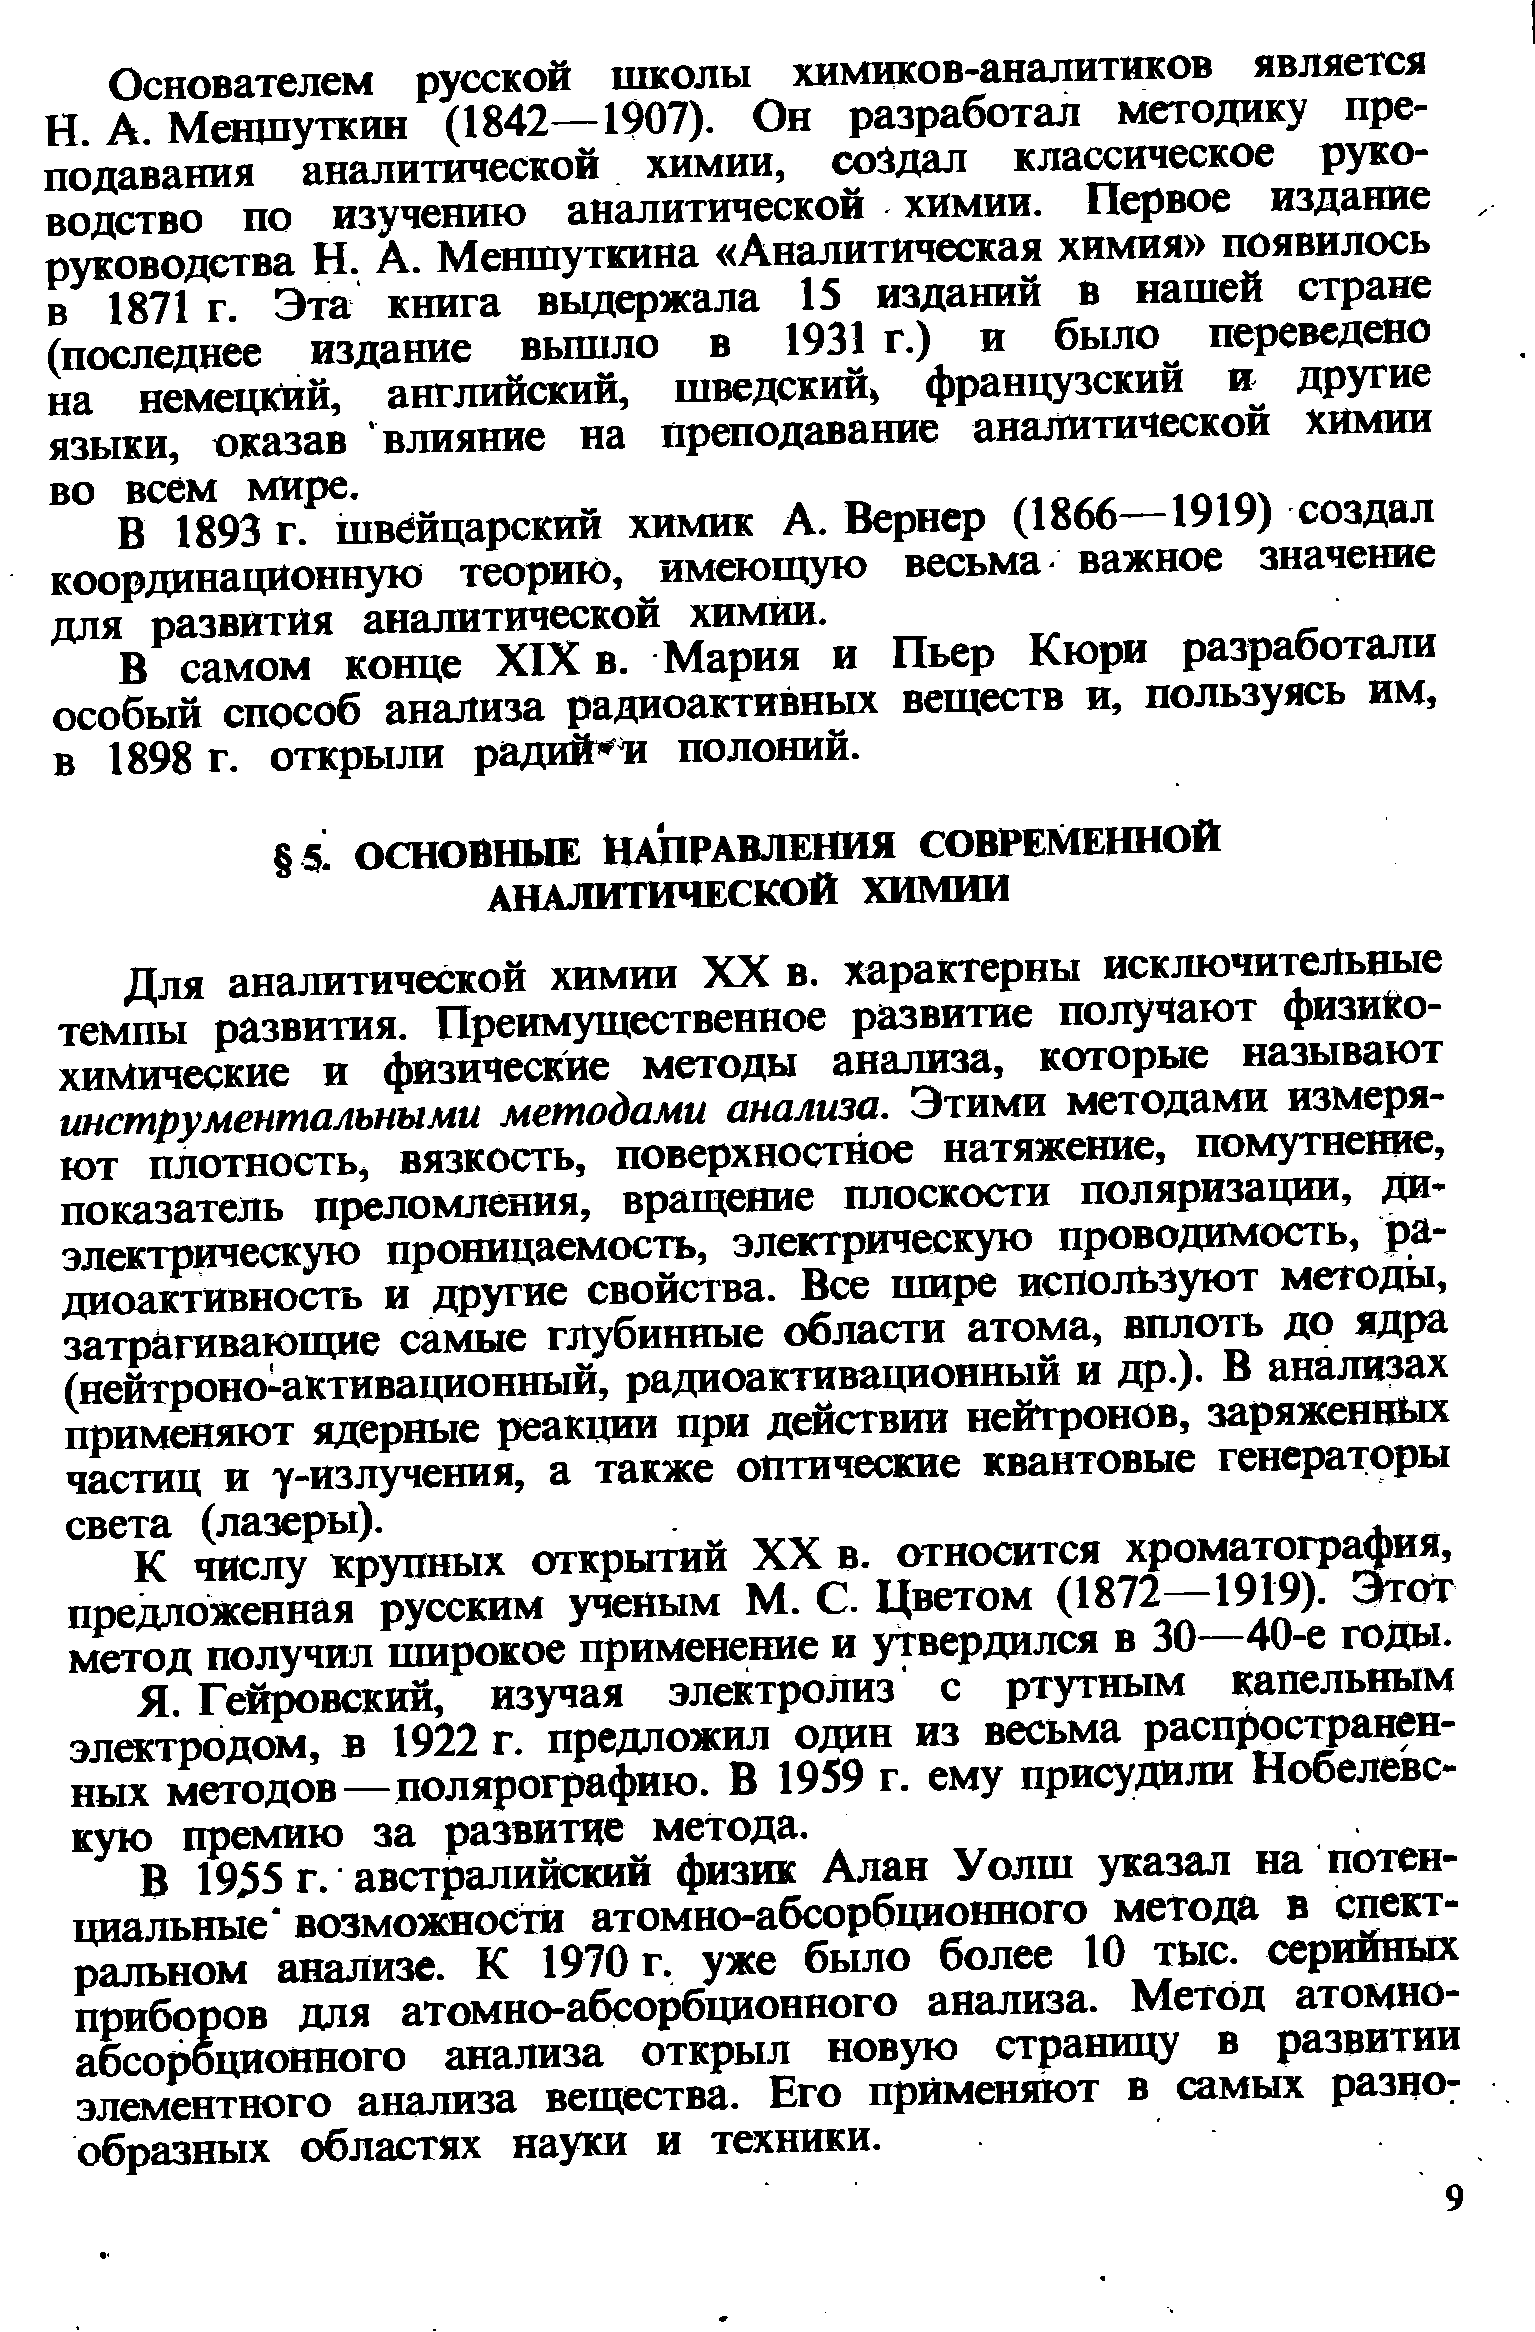 К числу 1срупных открытий XX в. относится хроматография, предложенная русским ученым М. С. Цветом (1872—1919). от метод получил широкое применение и утвердился в 30—40-е годы.